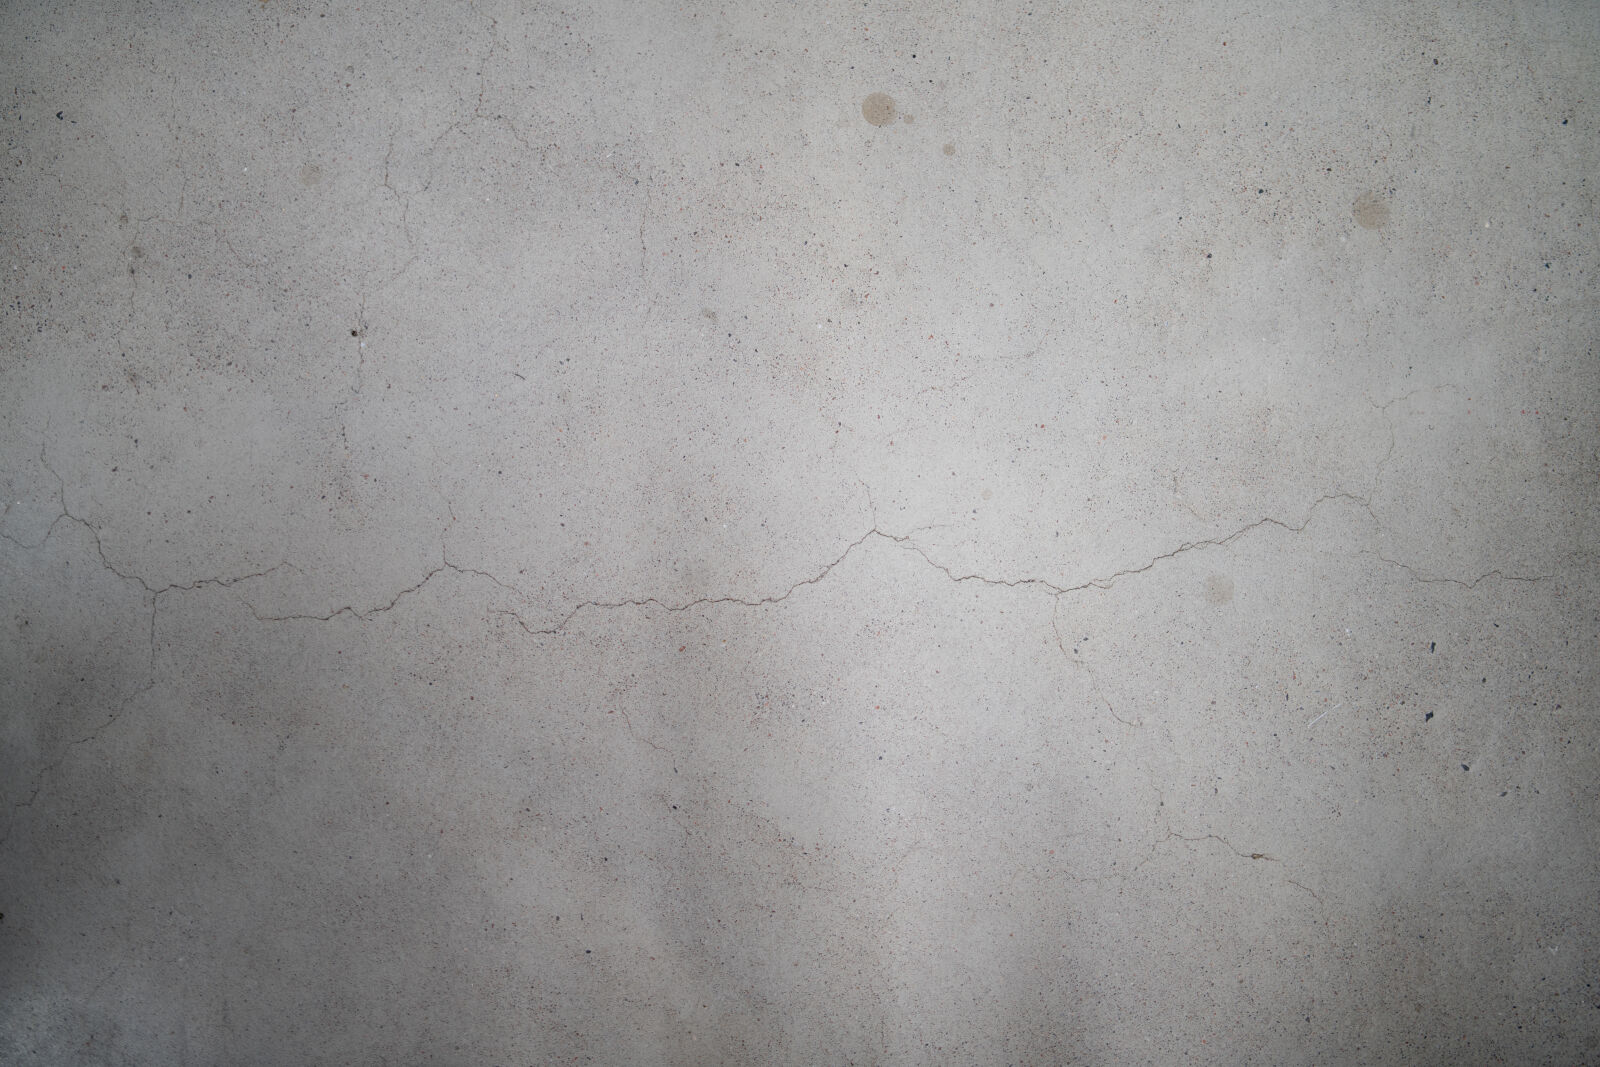 Samyang AF 35mm F1.4 FE sample photo. Concrete floor photography